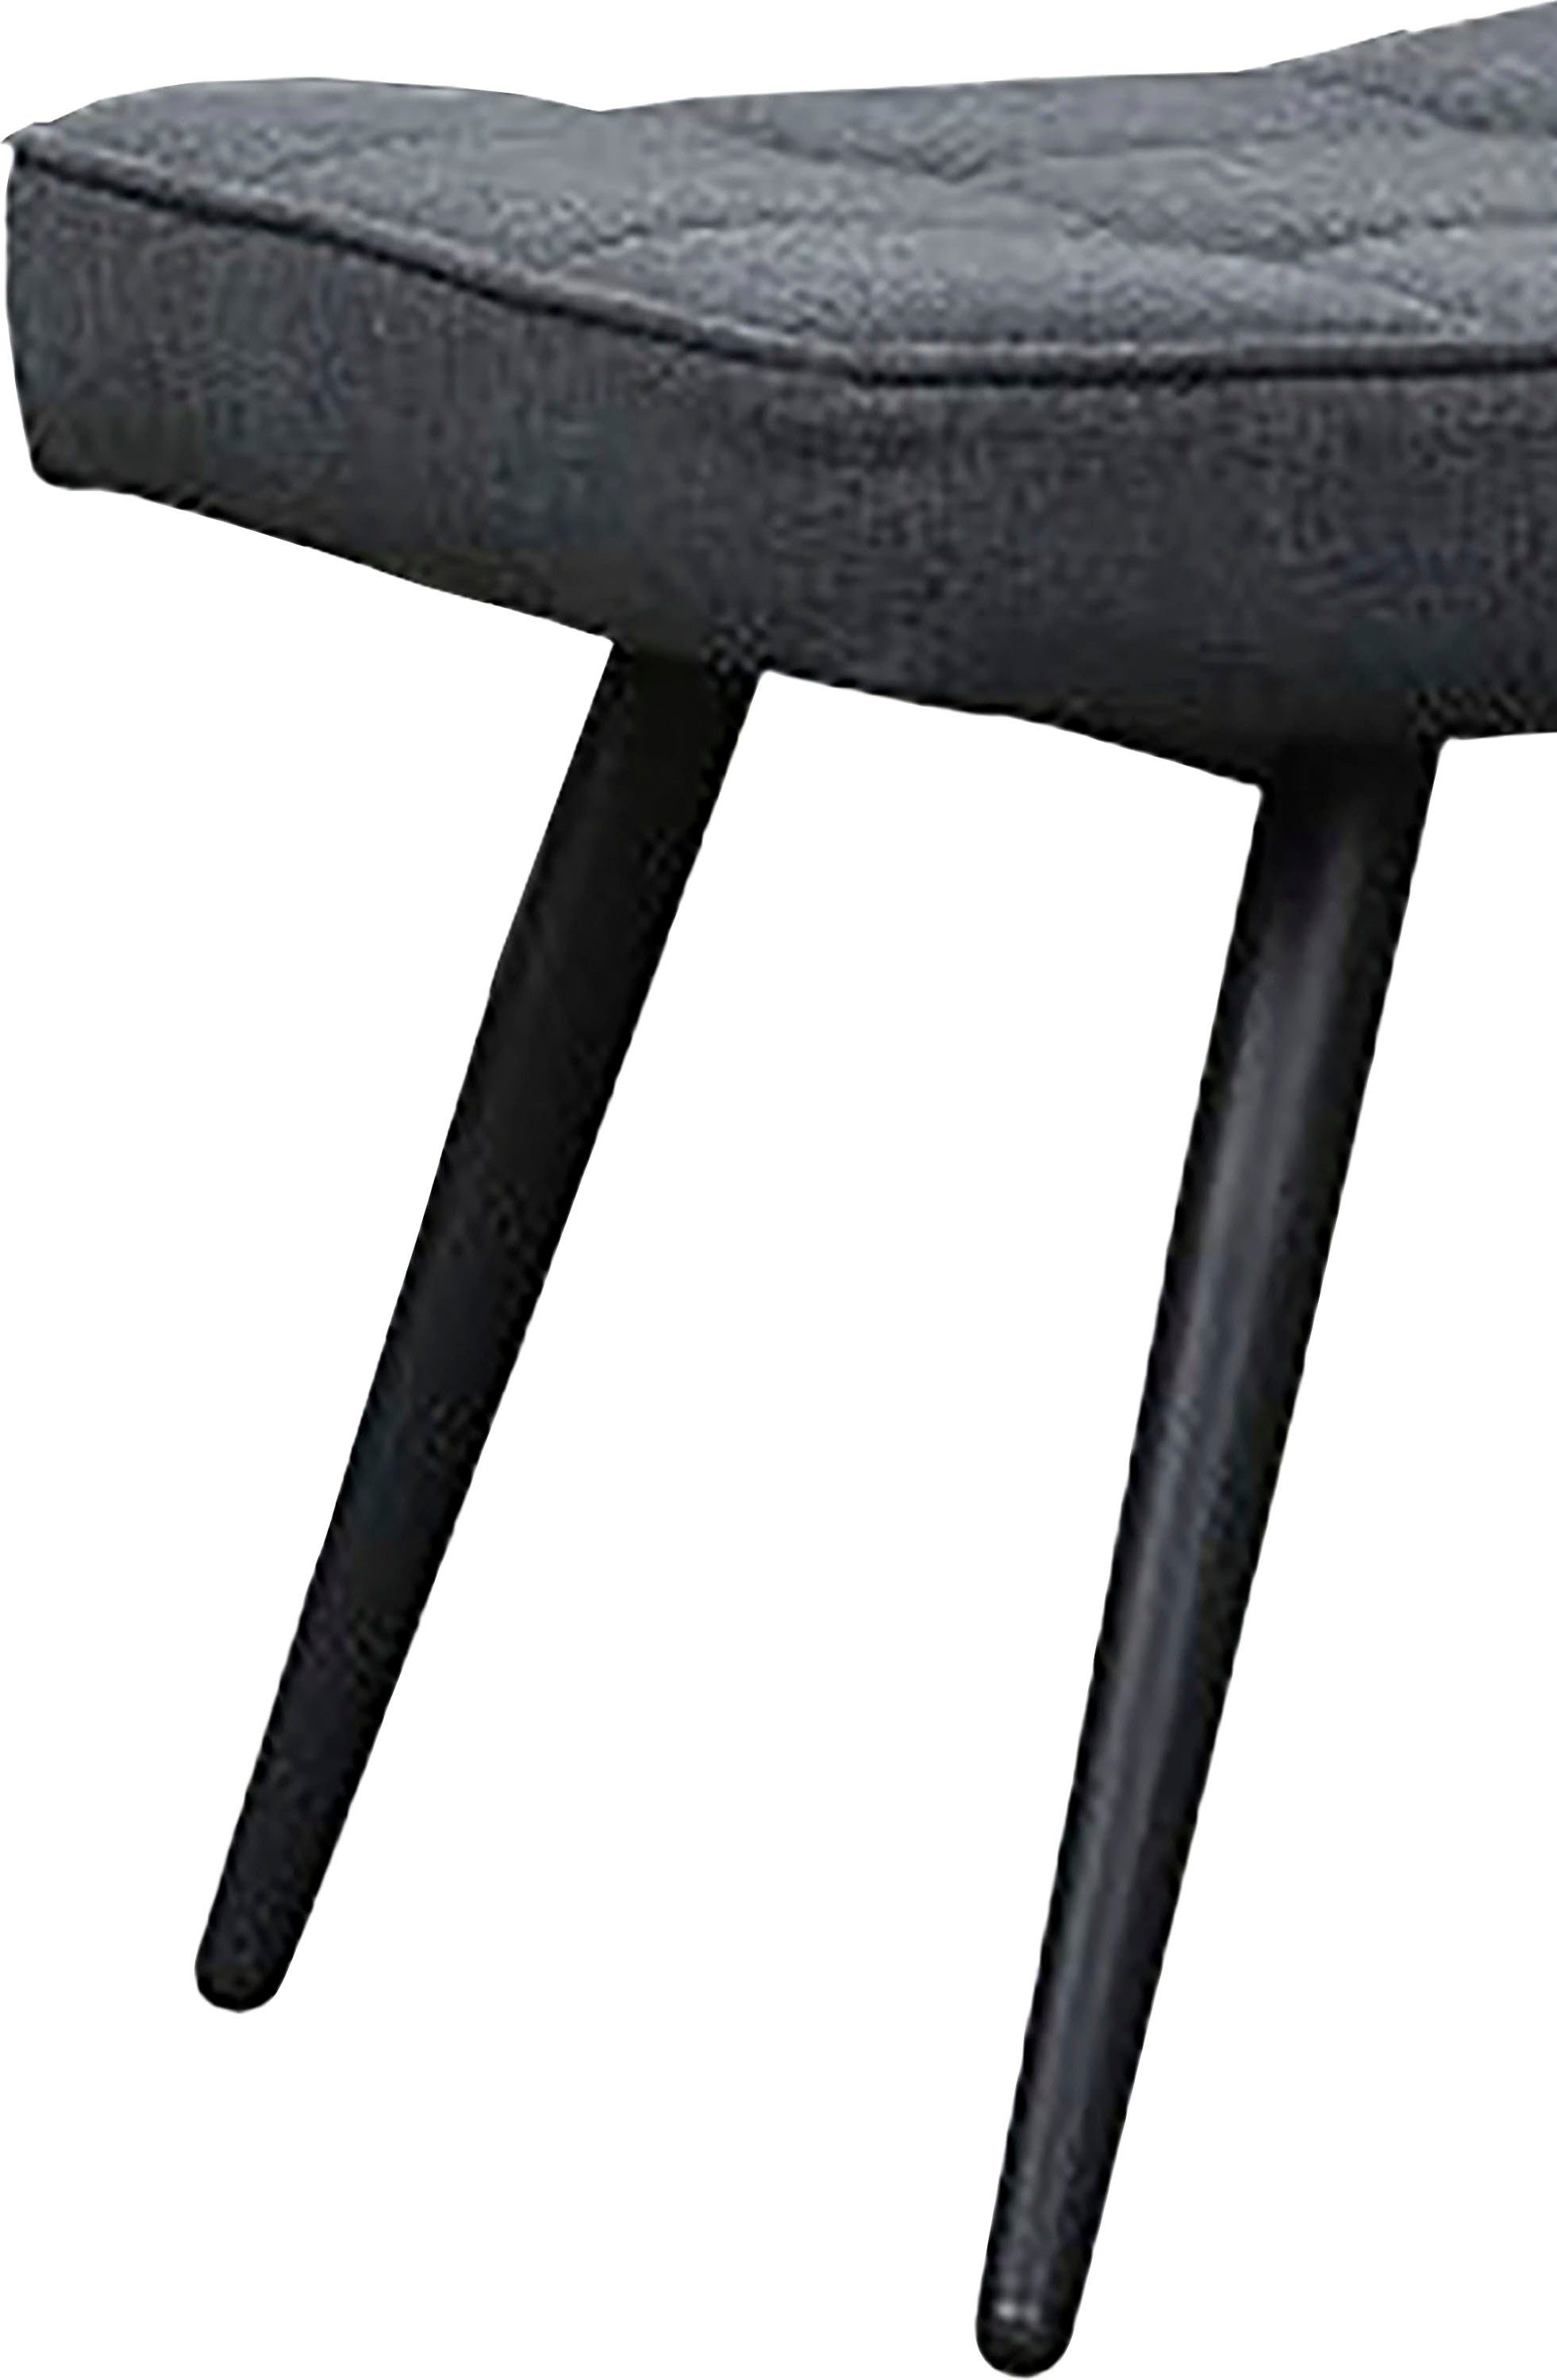 Cord, oder Webstoff oder schwarz ohne Uta in | Hocker, (1-St), Sessel schwarz byLIVING mit wahlweise Samt